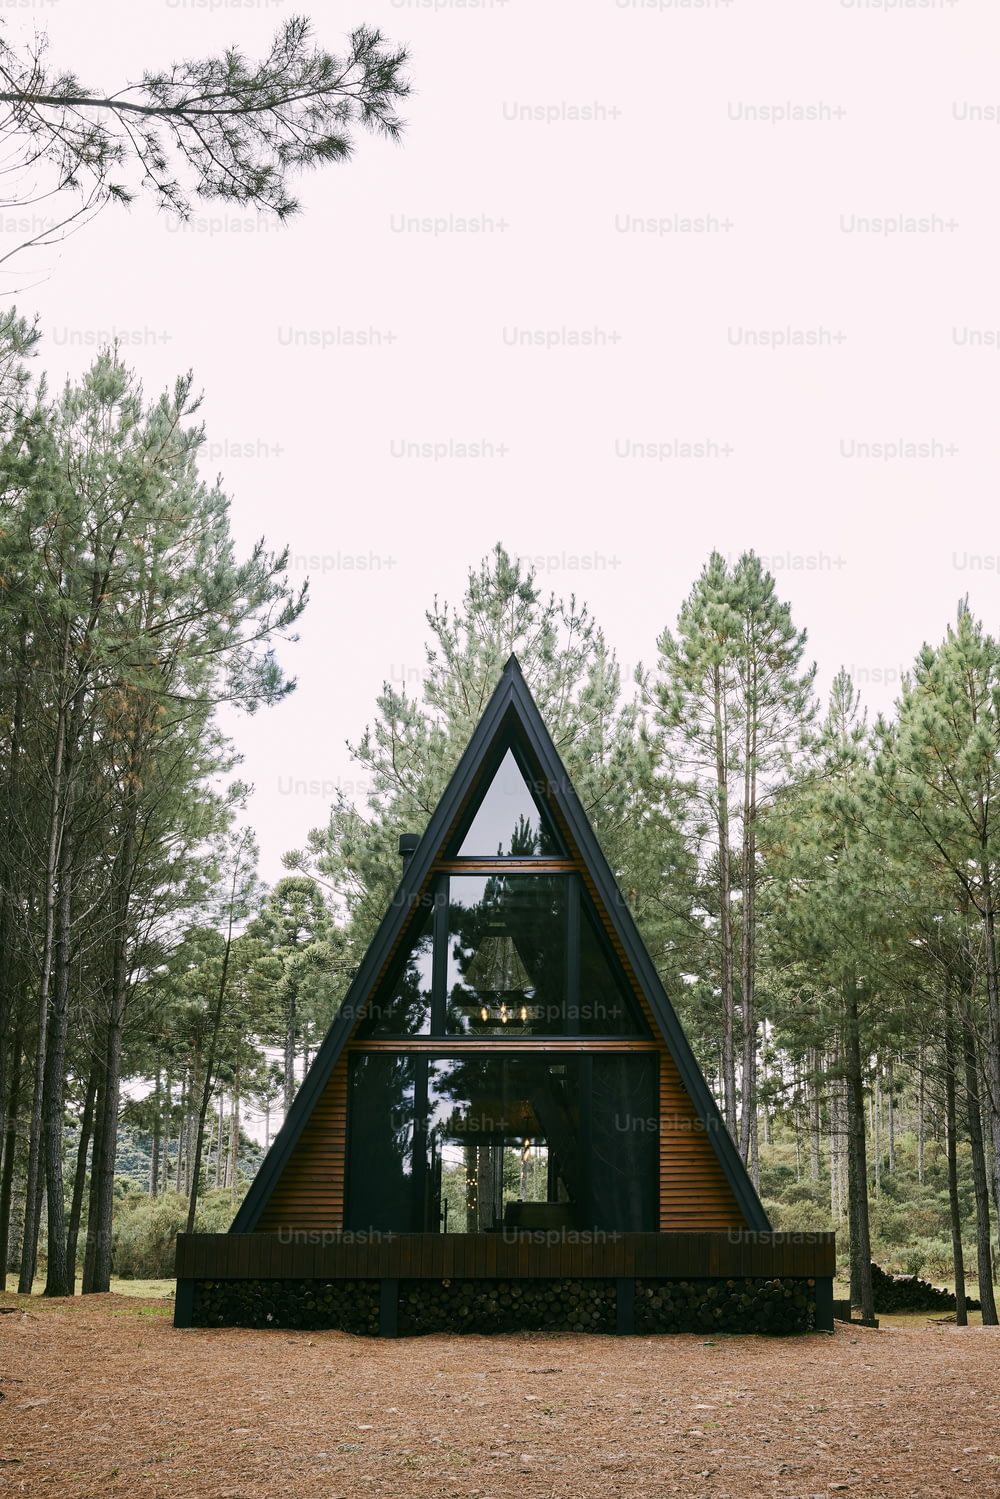 A - Cabaña de marco en medio de un bosque